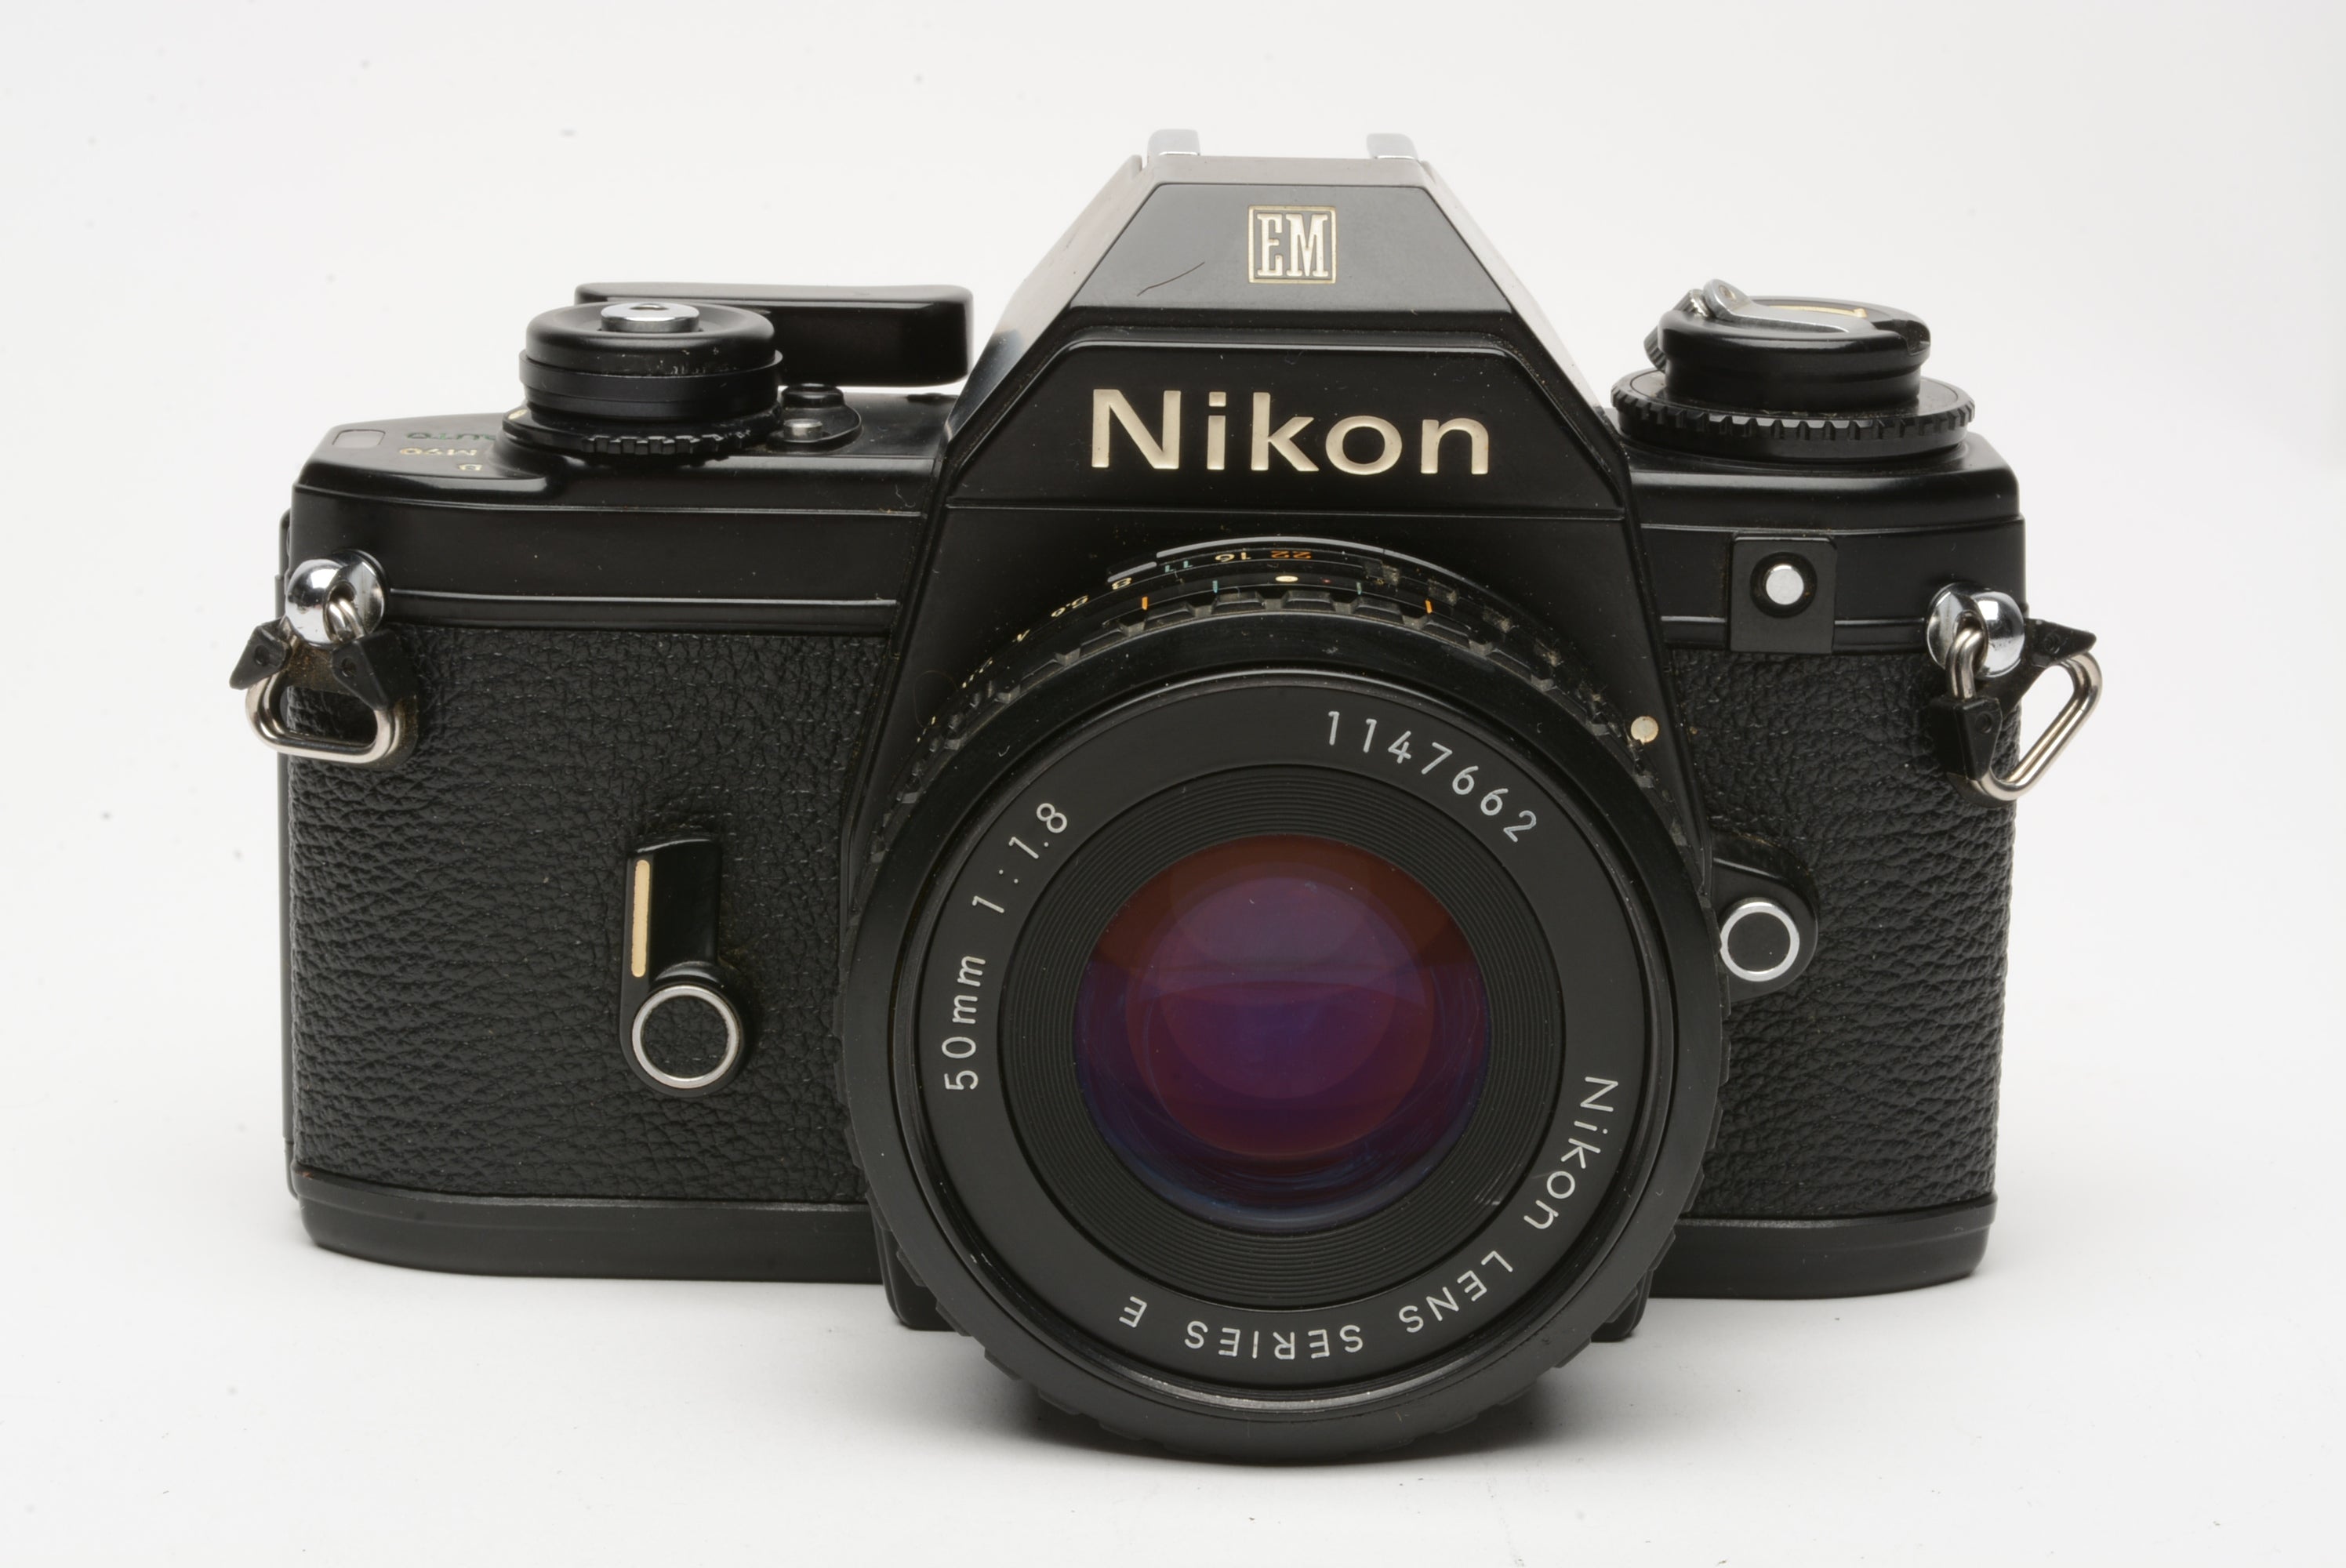 Nikon EM 35mm SLR w/Nikon Series E 50mm f1.8 lens, strap, cap